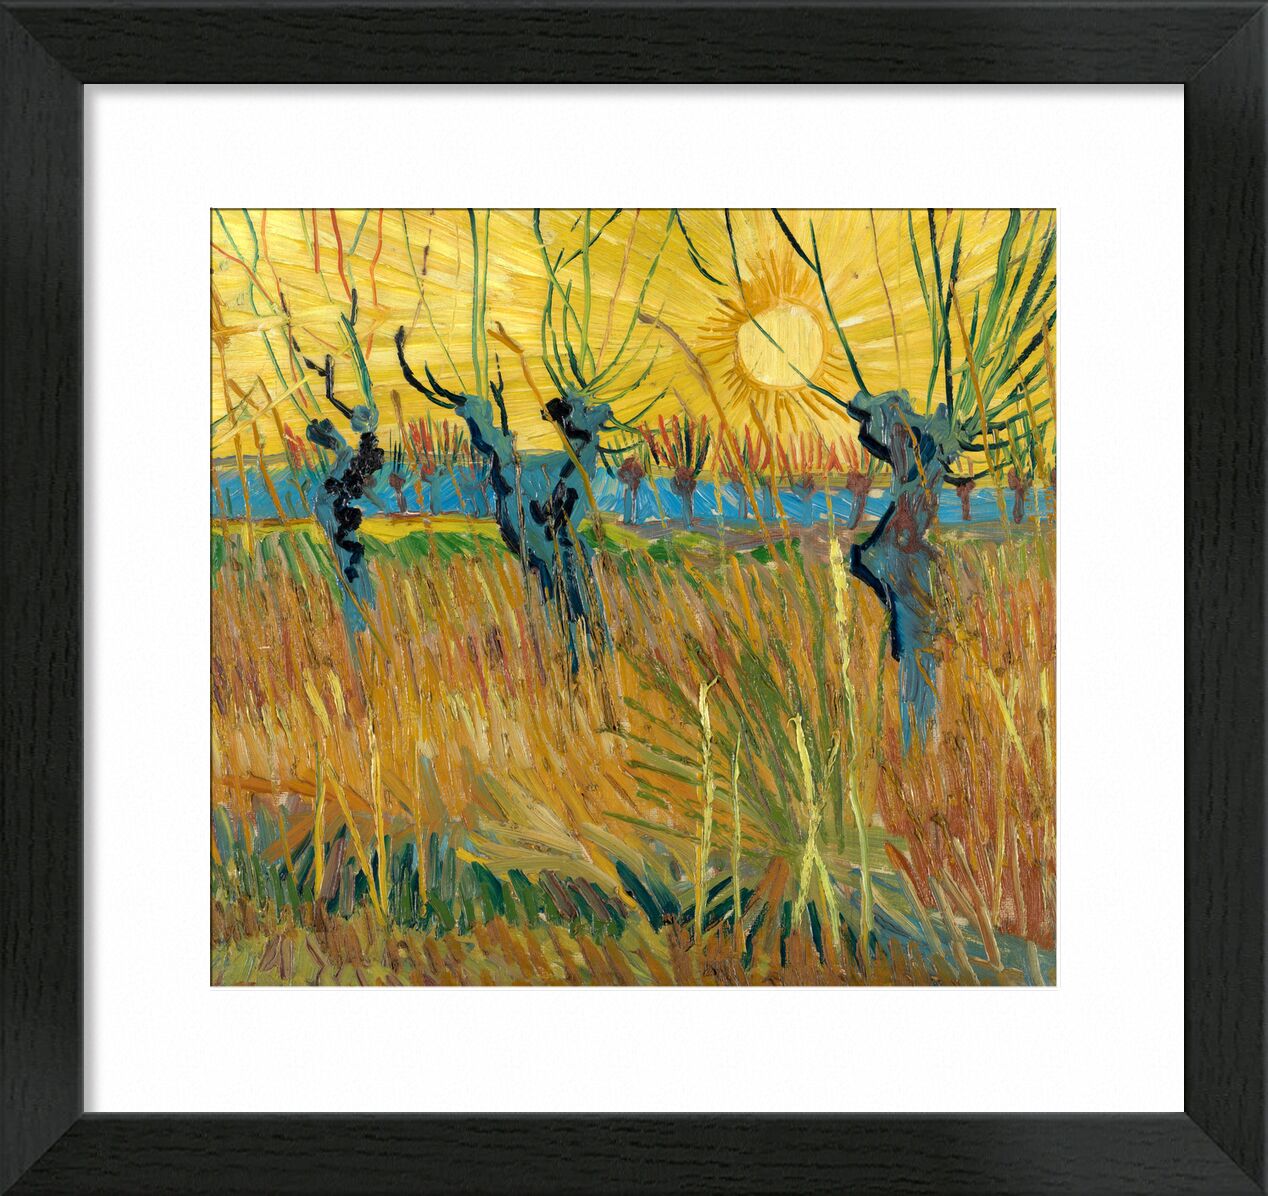 Pollard Willows at Sunset - Van Gogh von Bildende Kunst, Prodi Art, Van gogh, VINCENT VAN GOGH, Sonne, untergehende Sonne, Sonnenuntergang, Malerei, Rebe